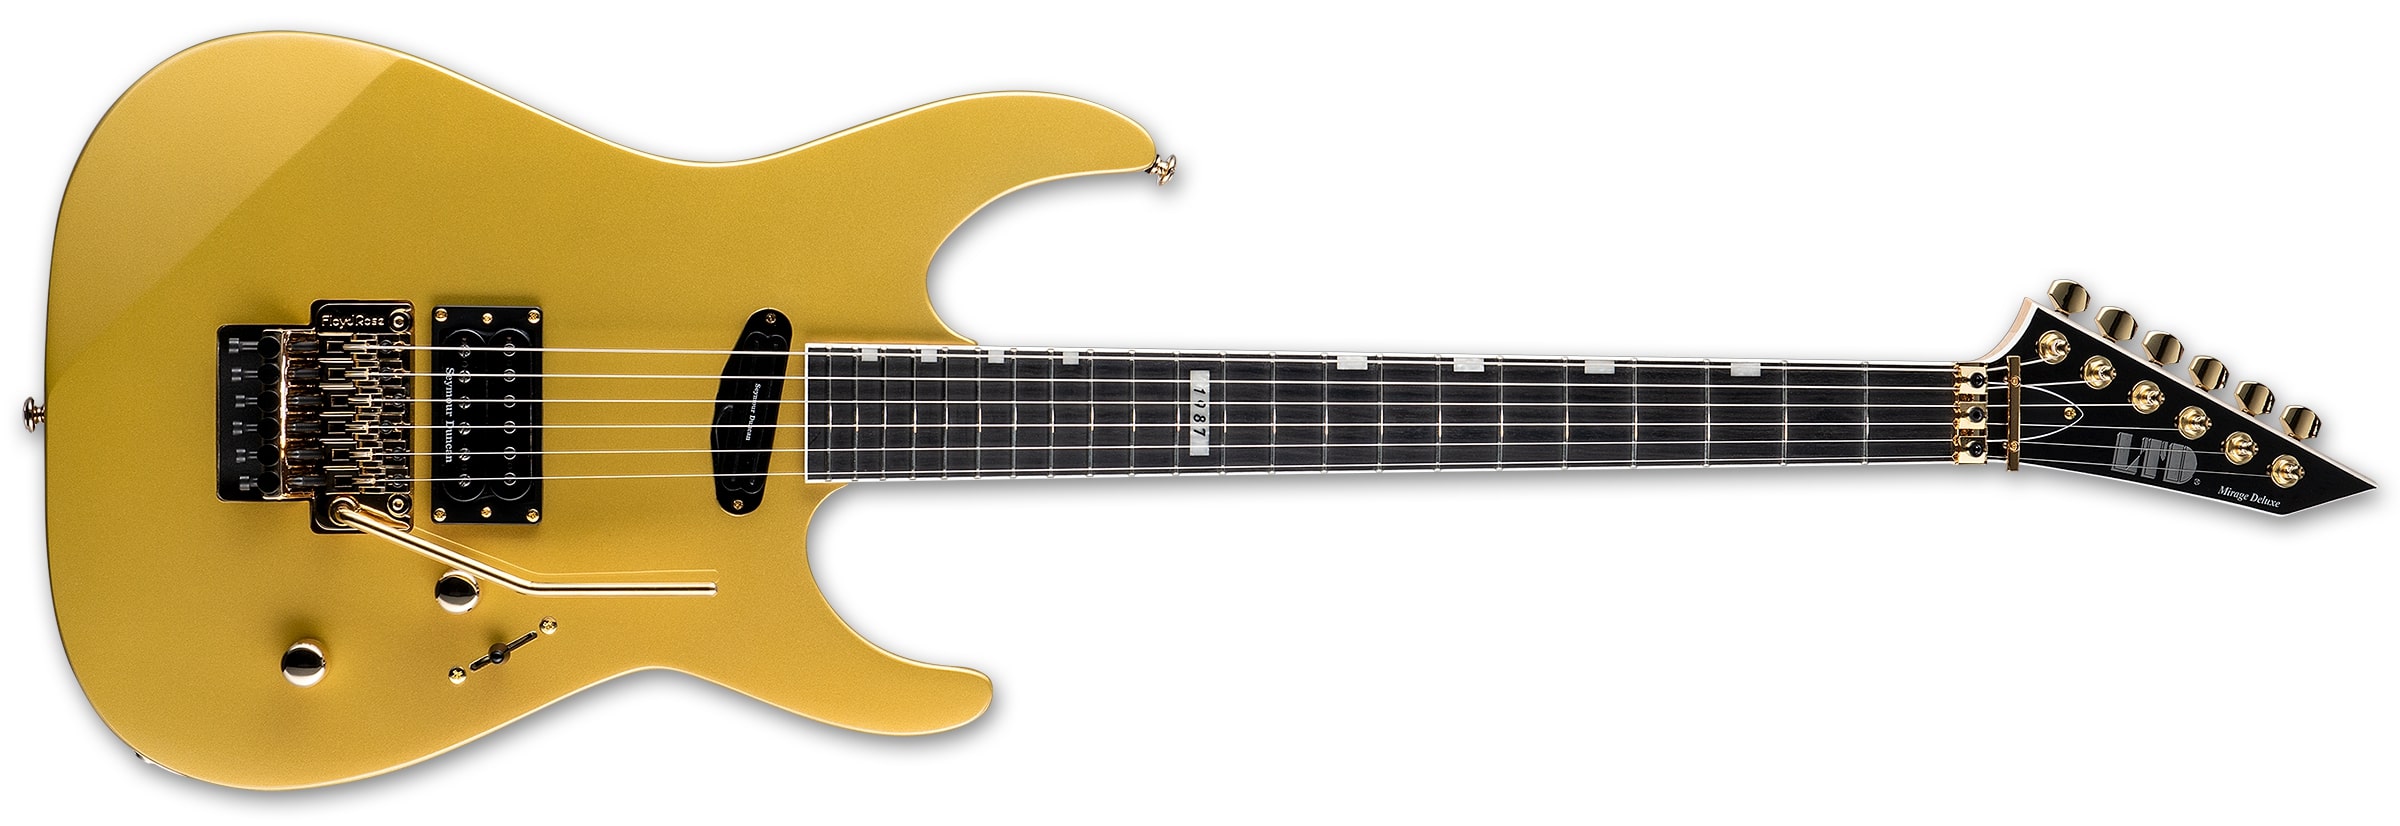 ESP LTD Mirage Deluxe '87 Electric Guitar, Metallic Gold LMIRAGEDX87MGO